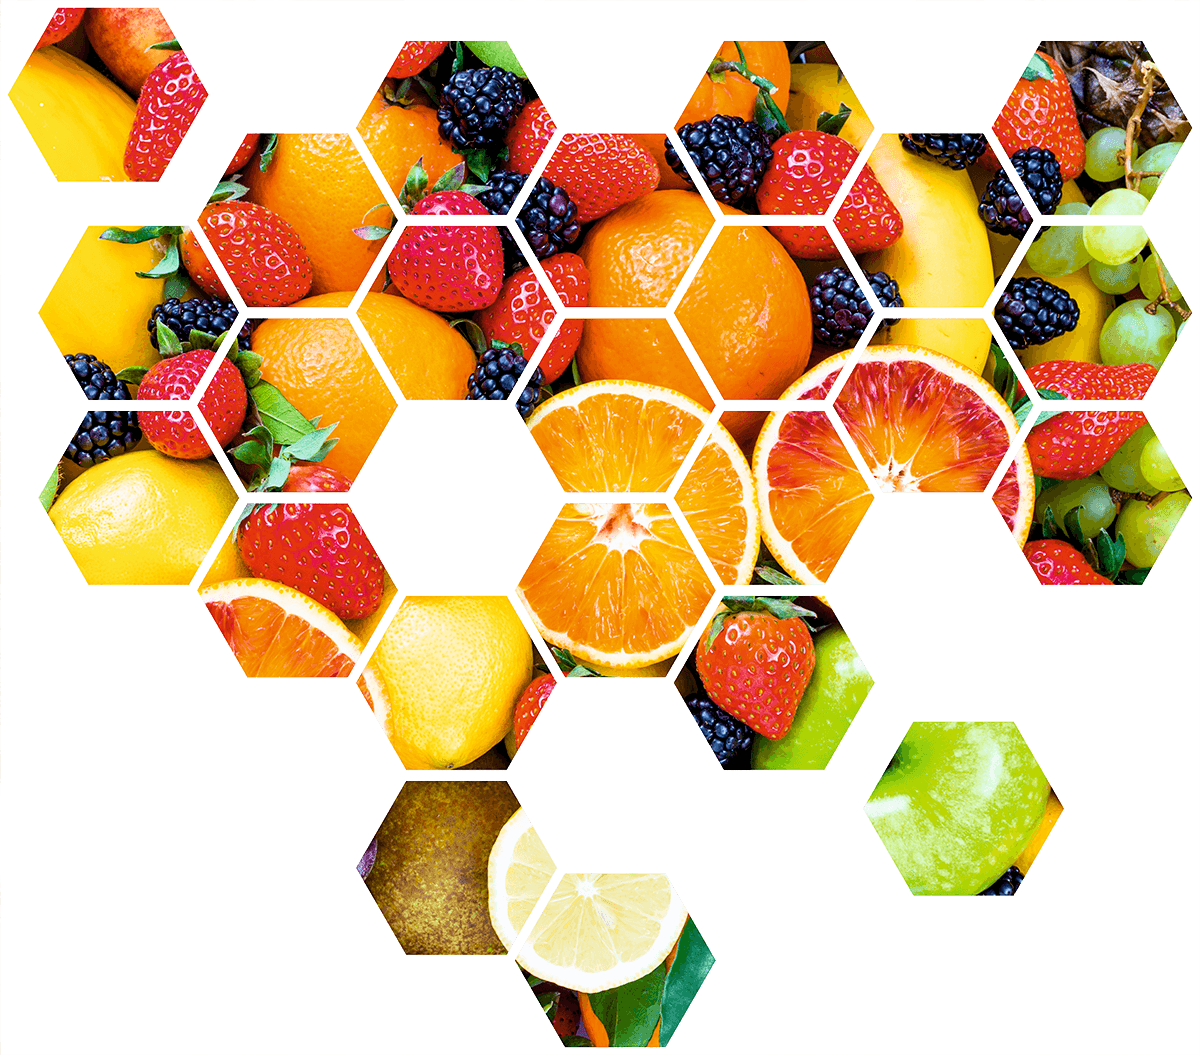 Stickers muraux: Kit Géométrique Fruits